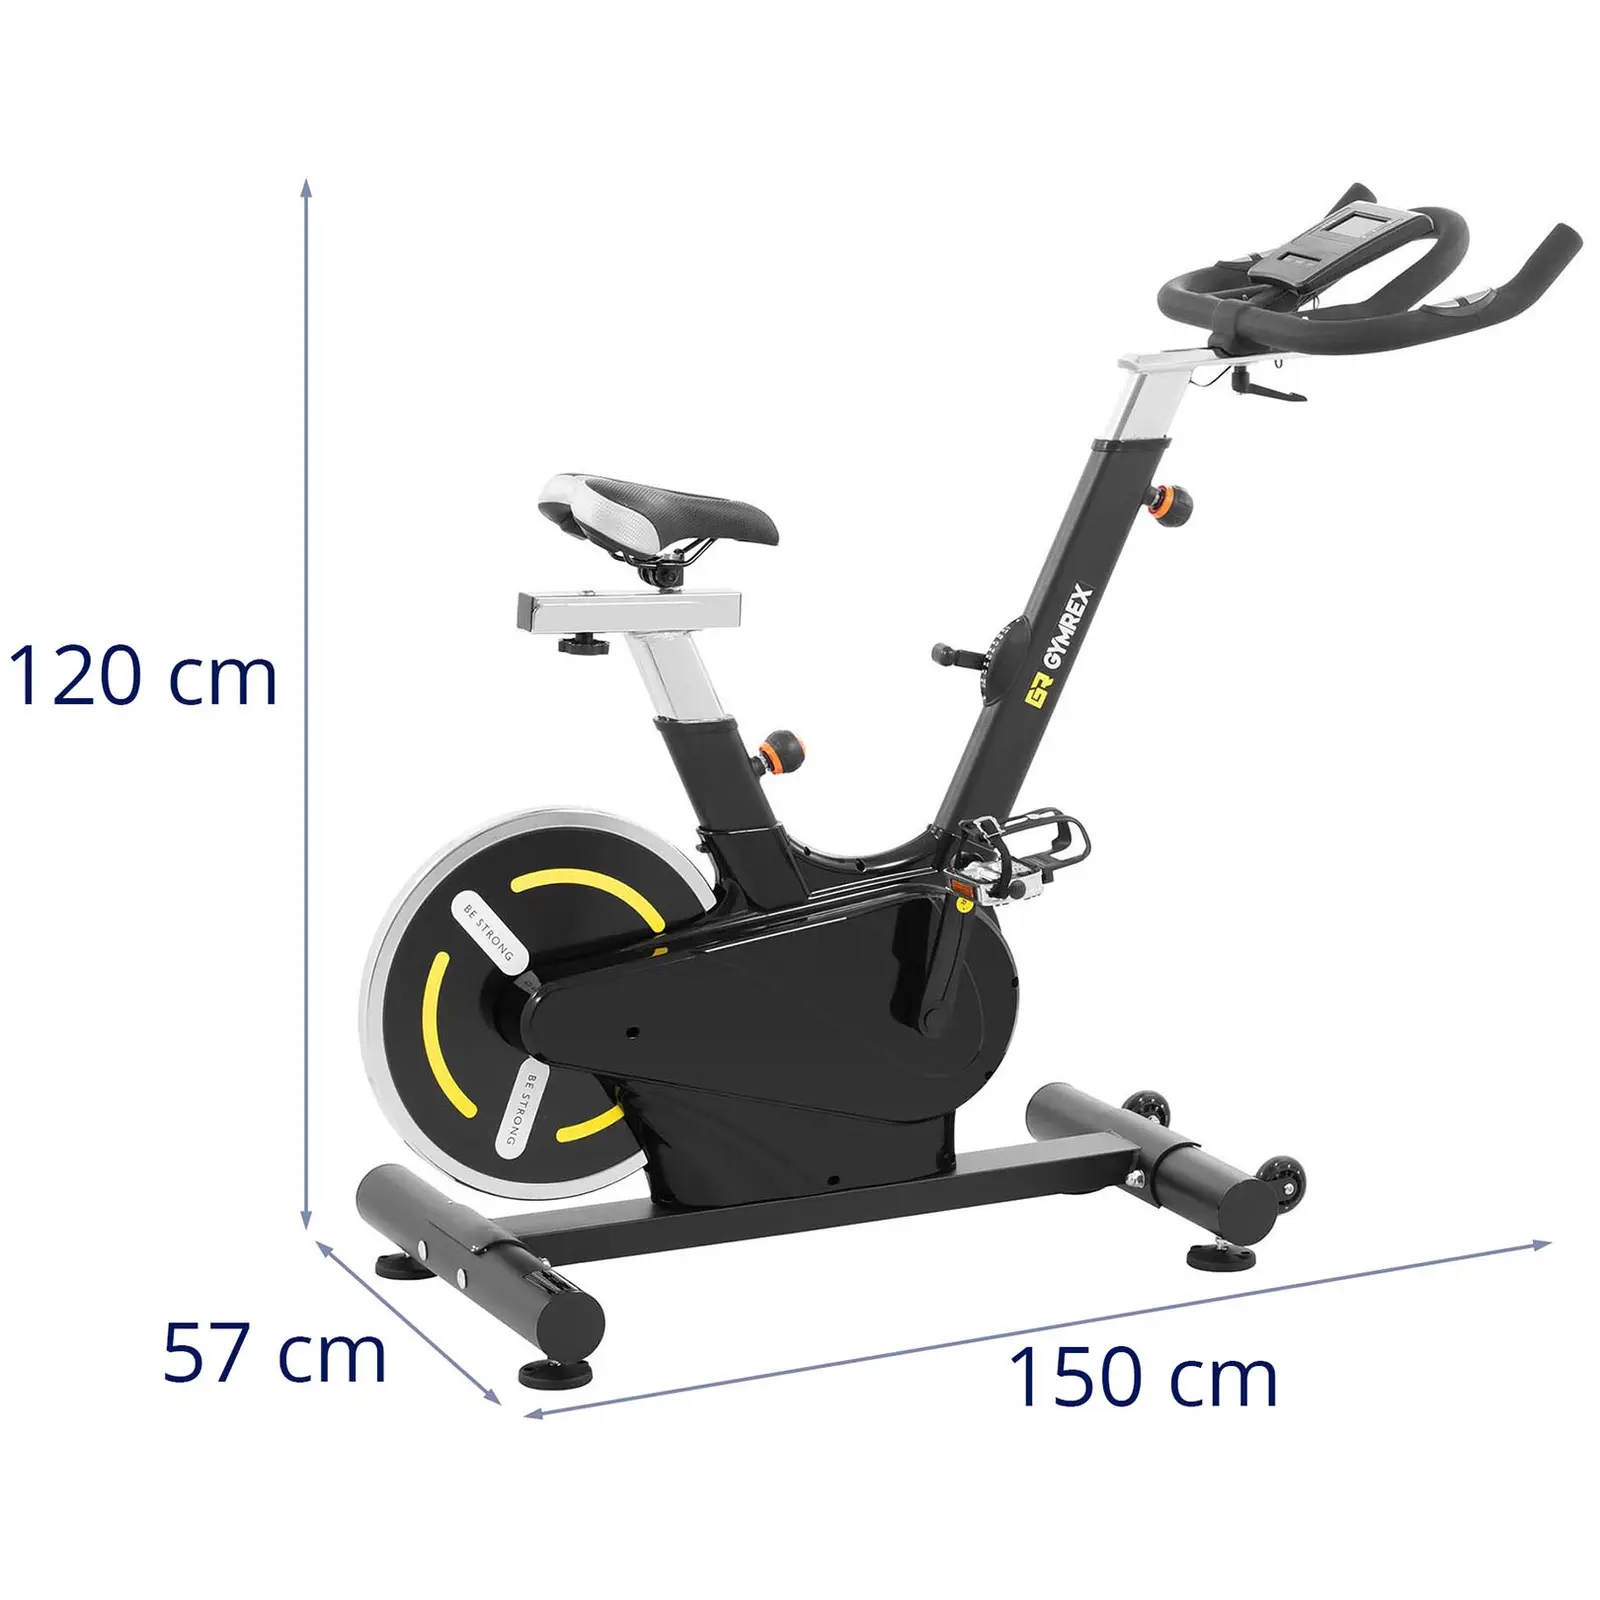 Motionscykel - pedalbelastning 13 kg